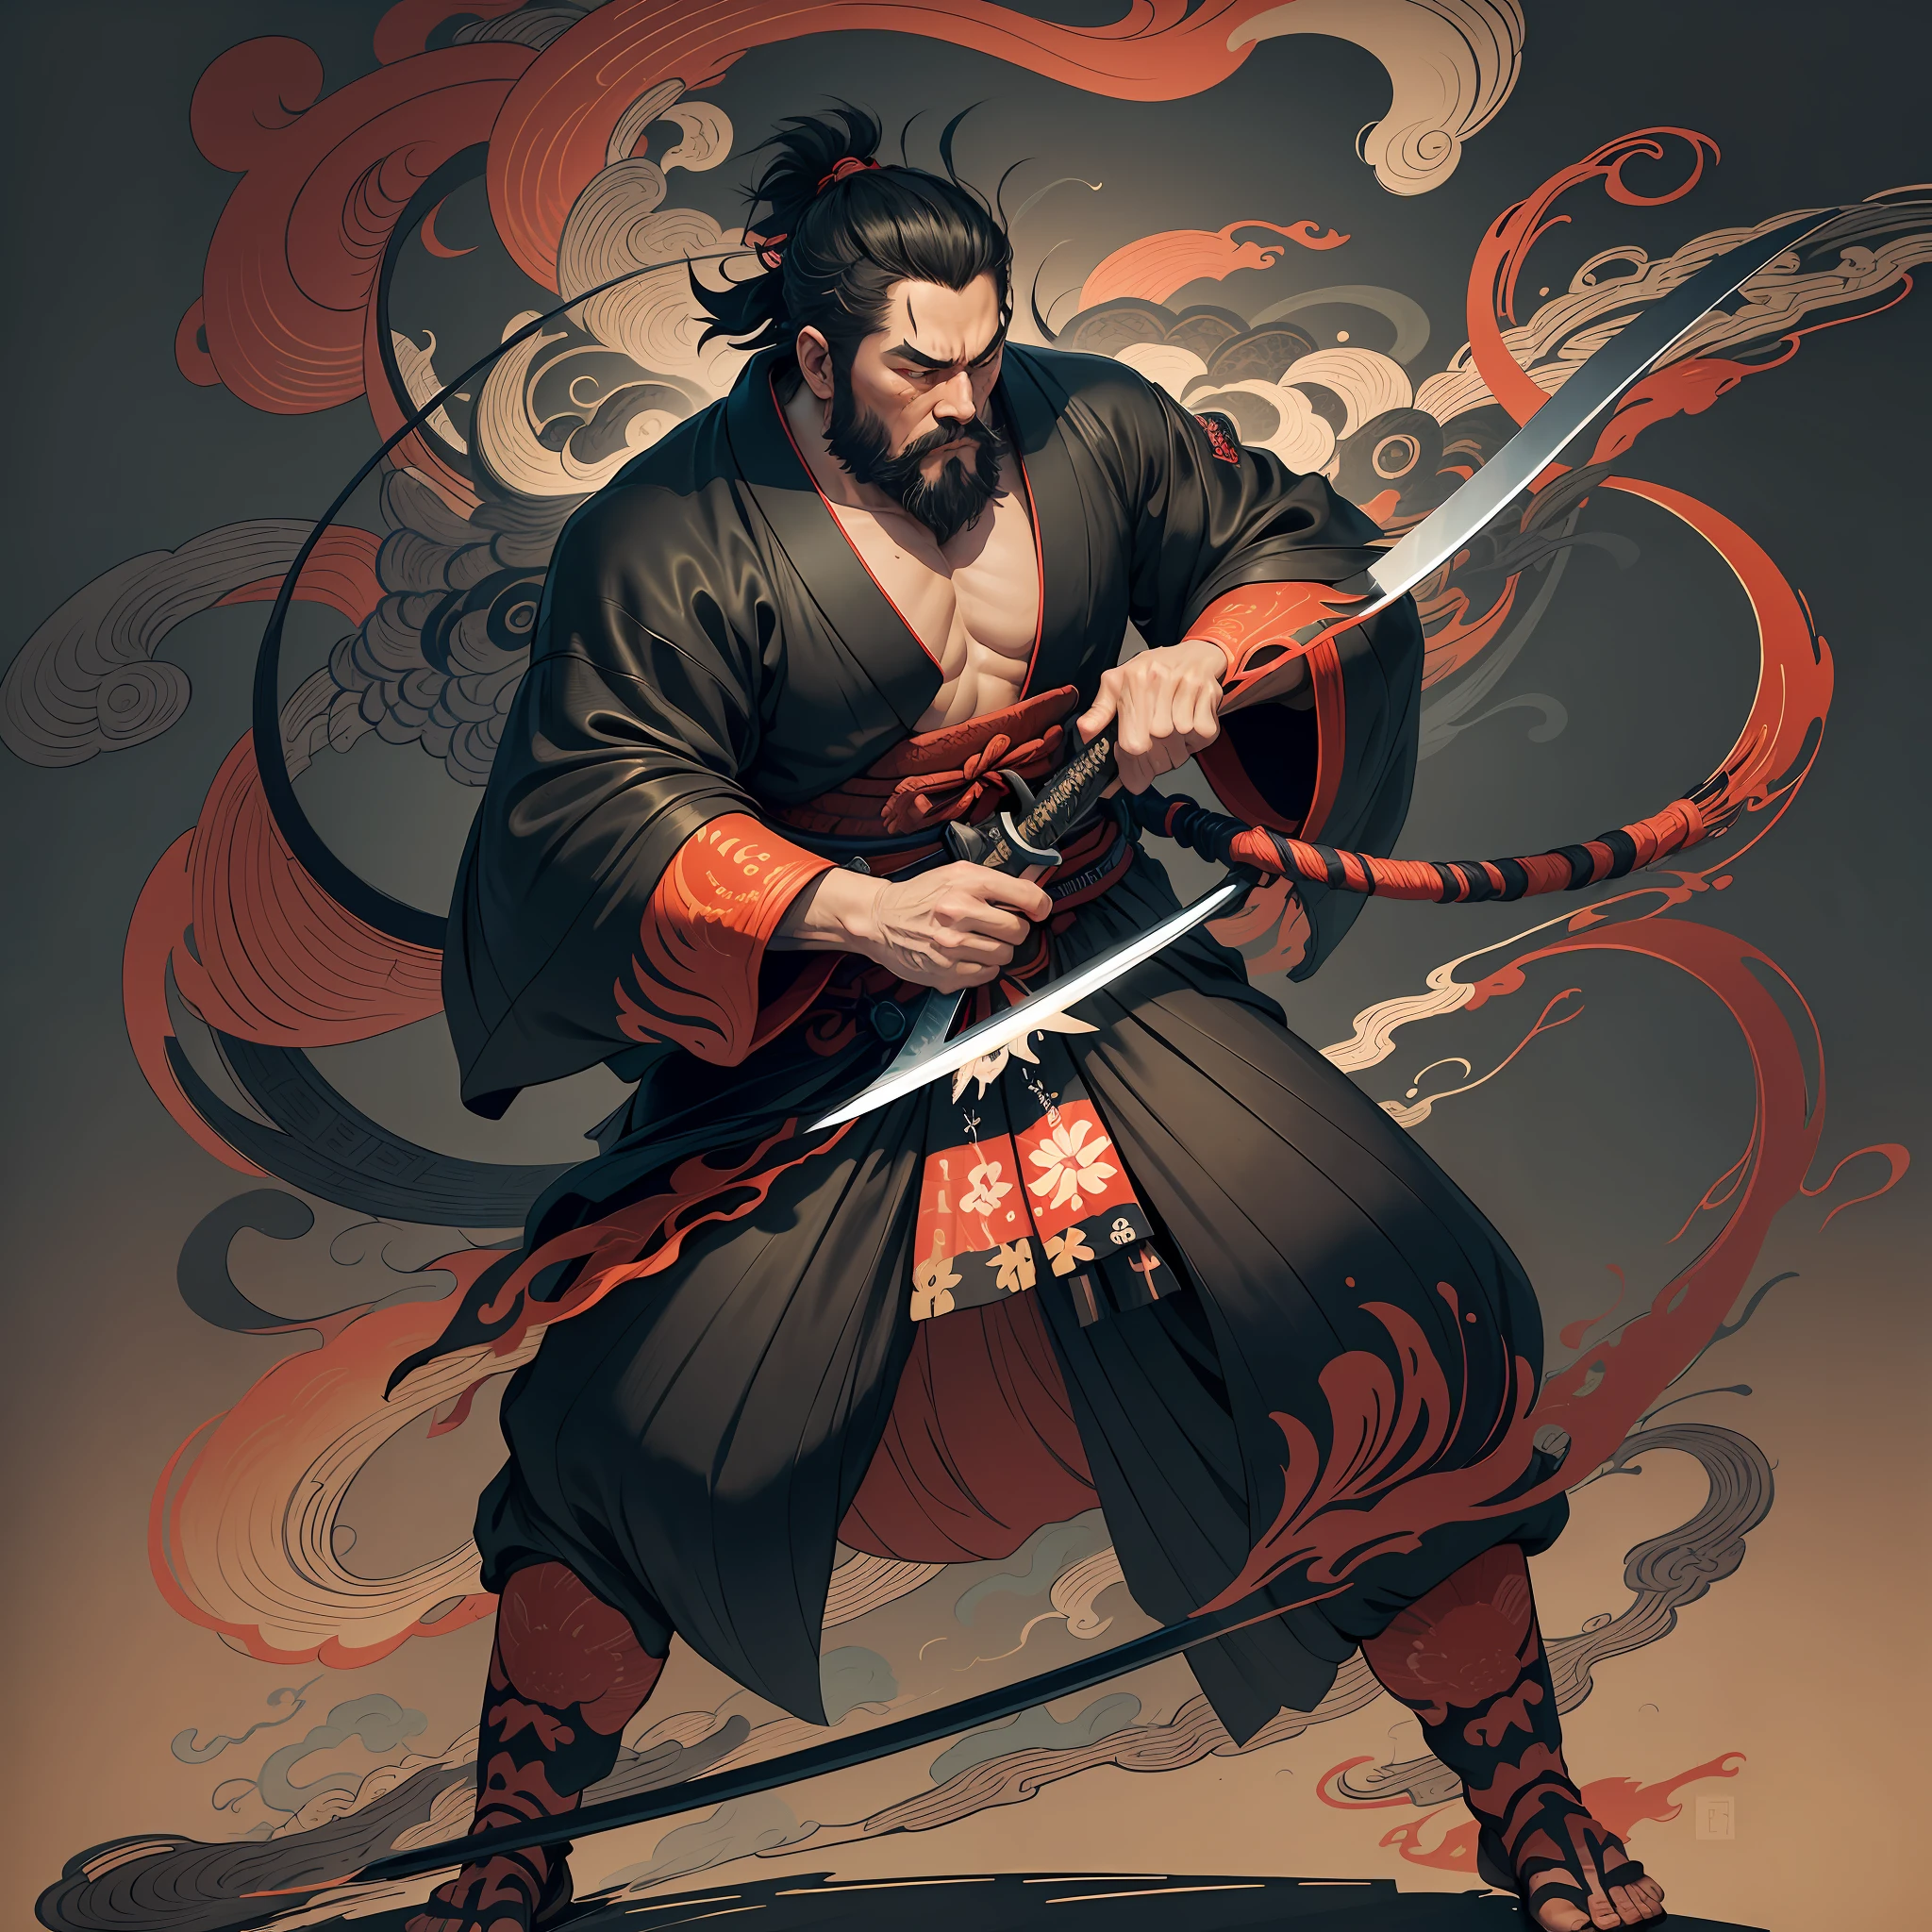 เป็นภาพวาดเต็มตัวที่มีสีสันเป็นธรรมชาติในสไตล์อุกิโยะ. Miyamoto Musashi เป็นซามูไรญี่ปุ่นที่มีร่างกายใหญ่เหมือนคนที่แข็งแกร่ง. เขามีใบหน้าที่หยาบกร้าน, ผมสั้นสีดำ, และสั้น, เคราที่ถูกตัดแต่ง. เขาเป็นซามูไรที่ชอบธรรมที่ต่อสู้กับความชั่วร้าย. เขาสวมชุดกิโมโนสีดํา. ฮากามะควรยาวขึ้นเล็กน้อยและวาดในรูปทรงที่ไหลลื่นซึ่งกระพือปีกในสายลม. เขาถือดาบในมือขวาของเขาที่มีเปลวไฟออกมาจากดาบญี่ปุ่นของเขา. พื้นหลังเป็นเปลวไฟหมุนวนในสไตล์คัตสึชิกะ โฮคุไซ. ผลงานชิ้นเอกที่มีความละเอียดสูงสไตล์ภาพอุกิโยะ, ด้วยคุณภาพสูงสุด --auto --s2